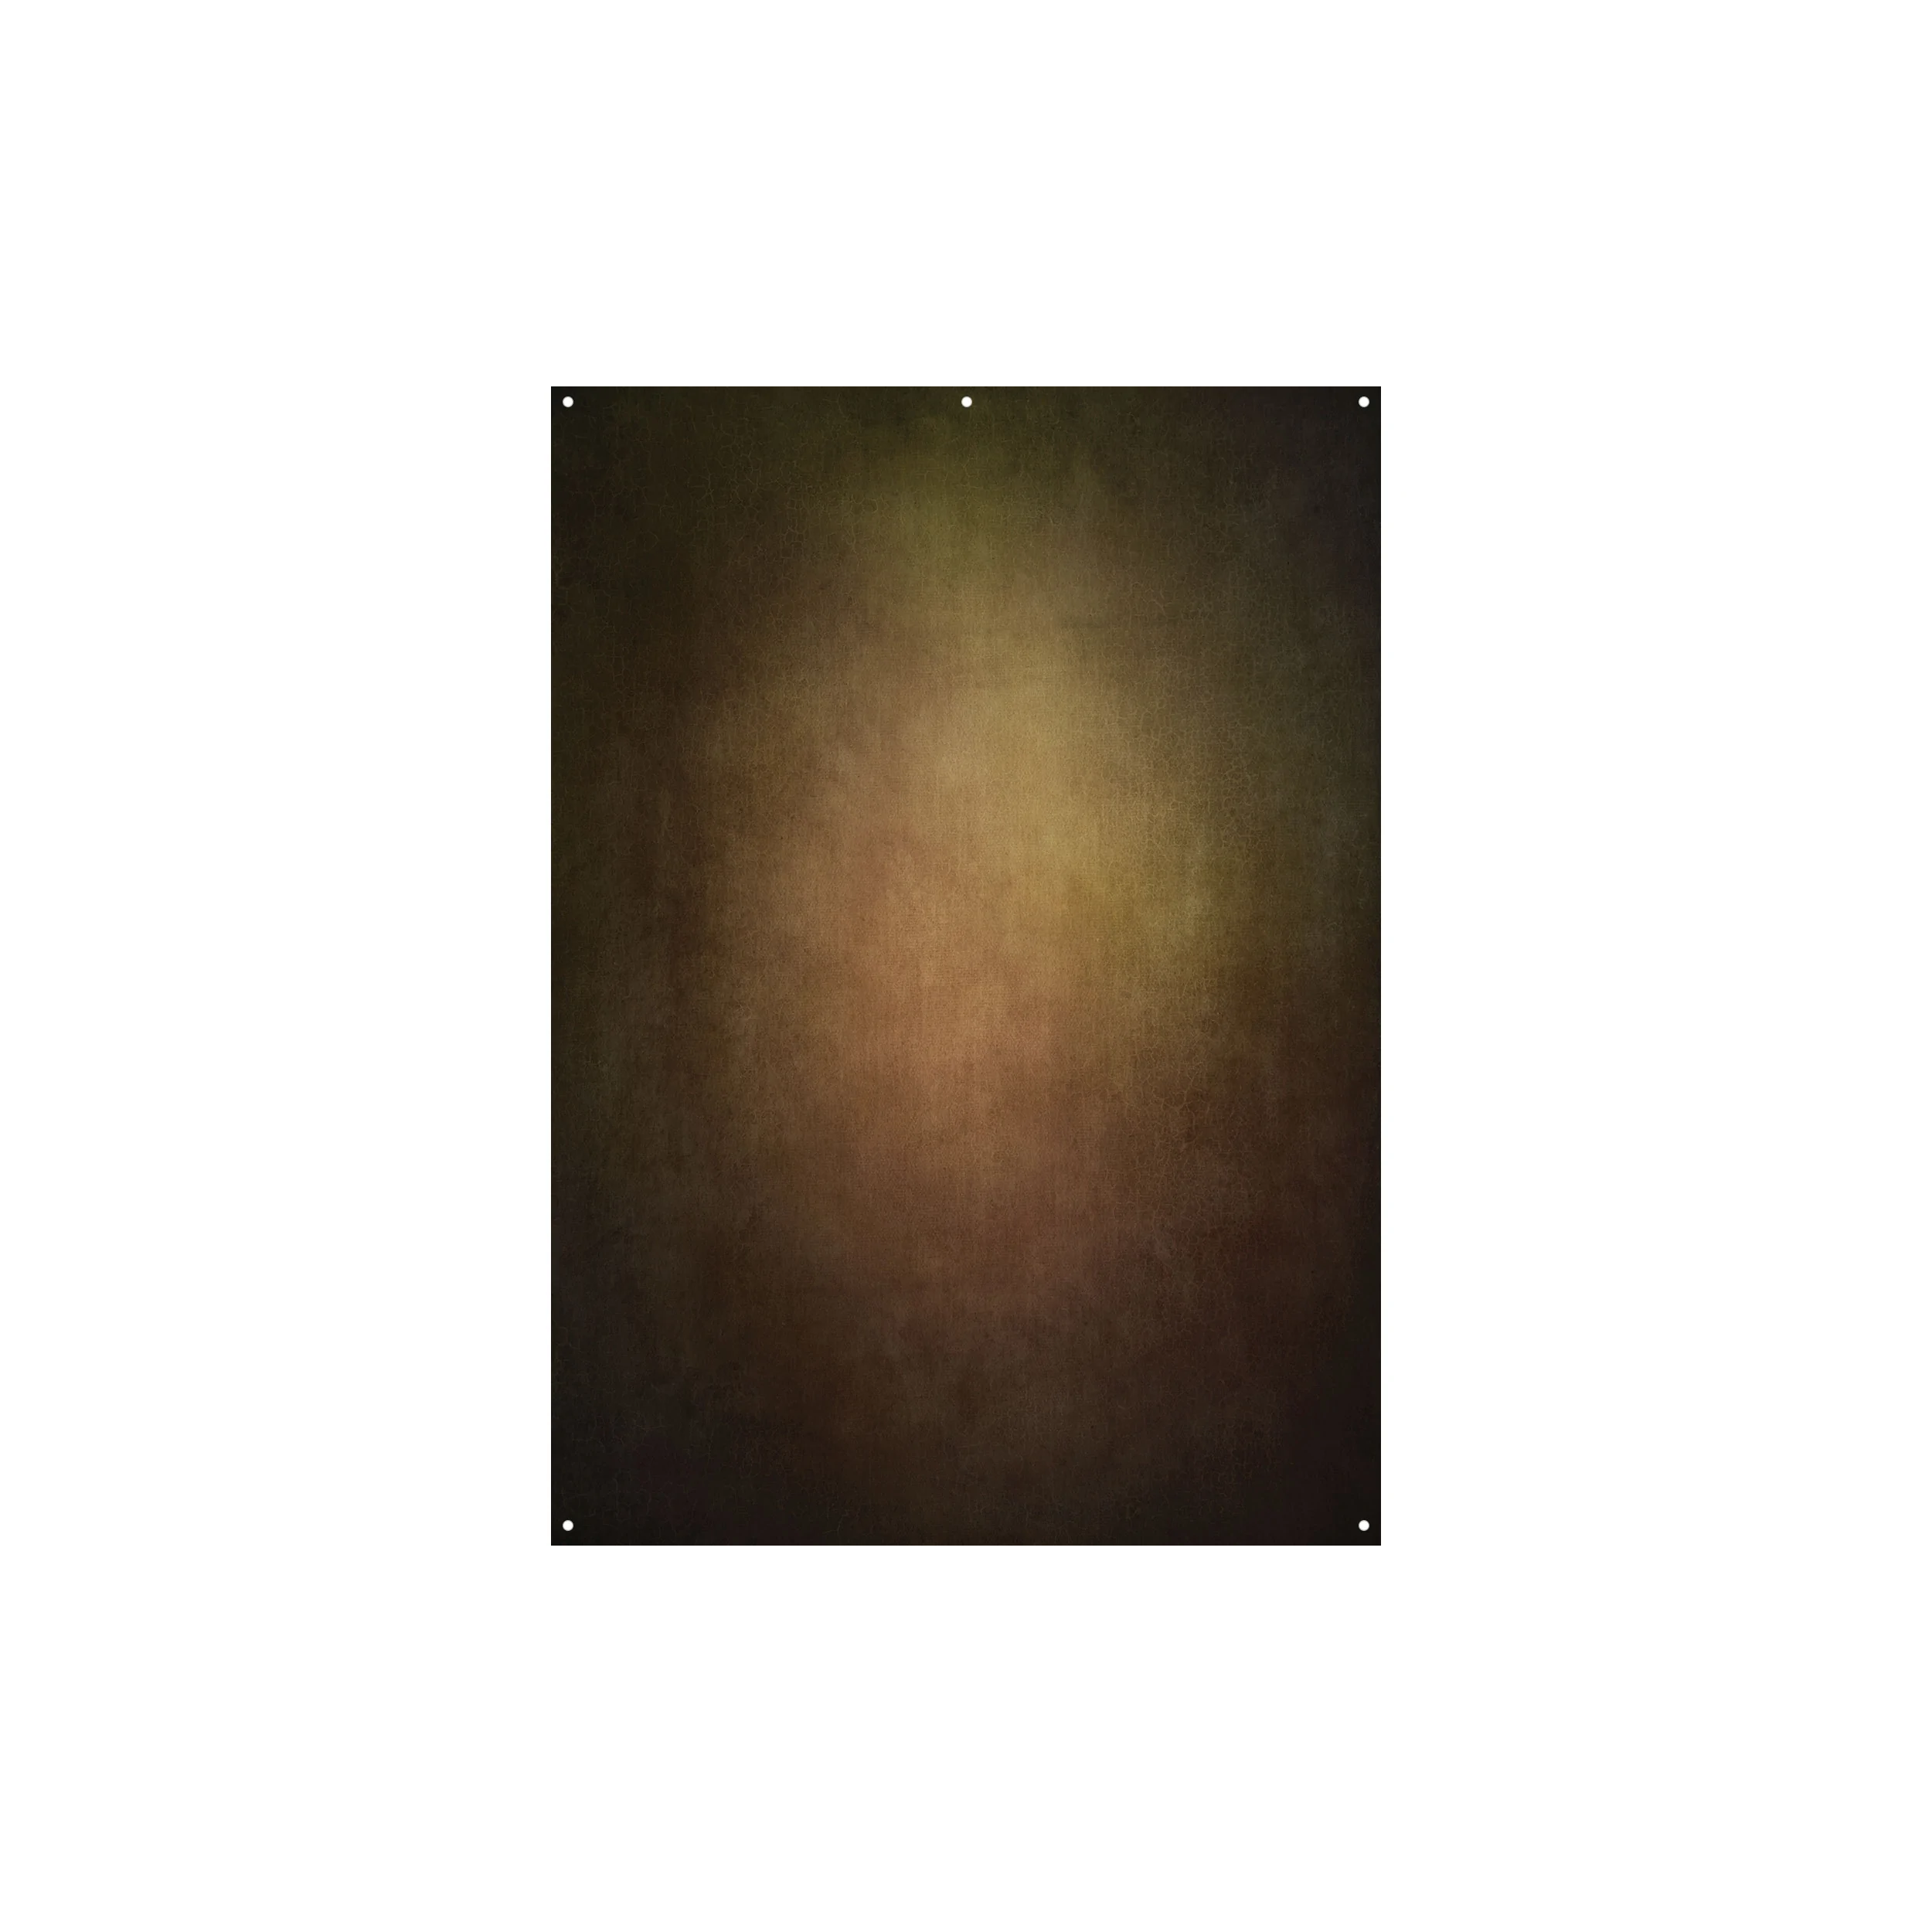 Westcott X-Drop Fabric Backdrop - Warm Painterly by Joel Grimes (5' x 7')